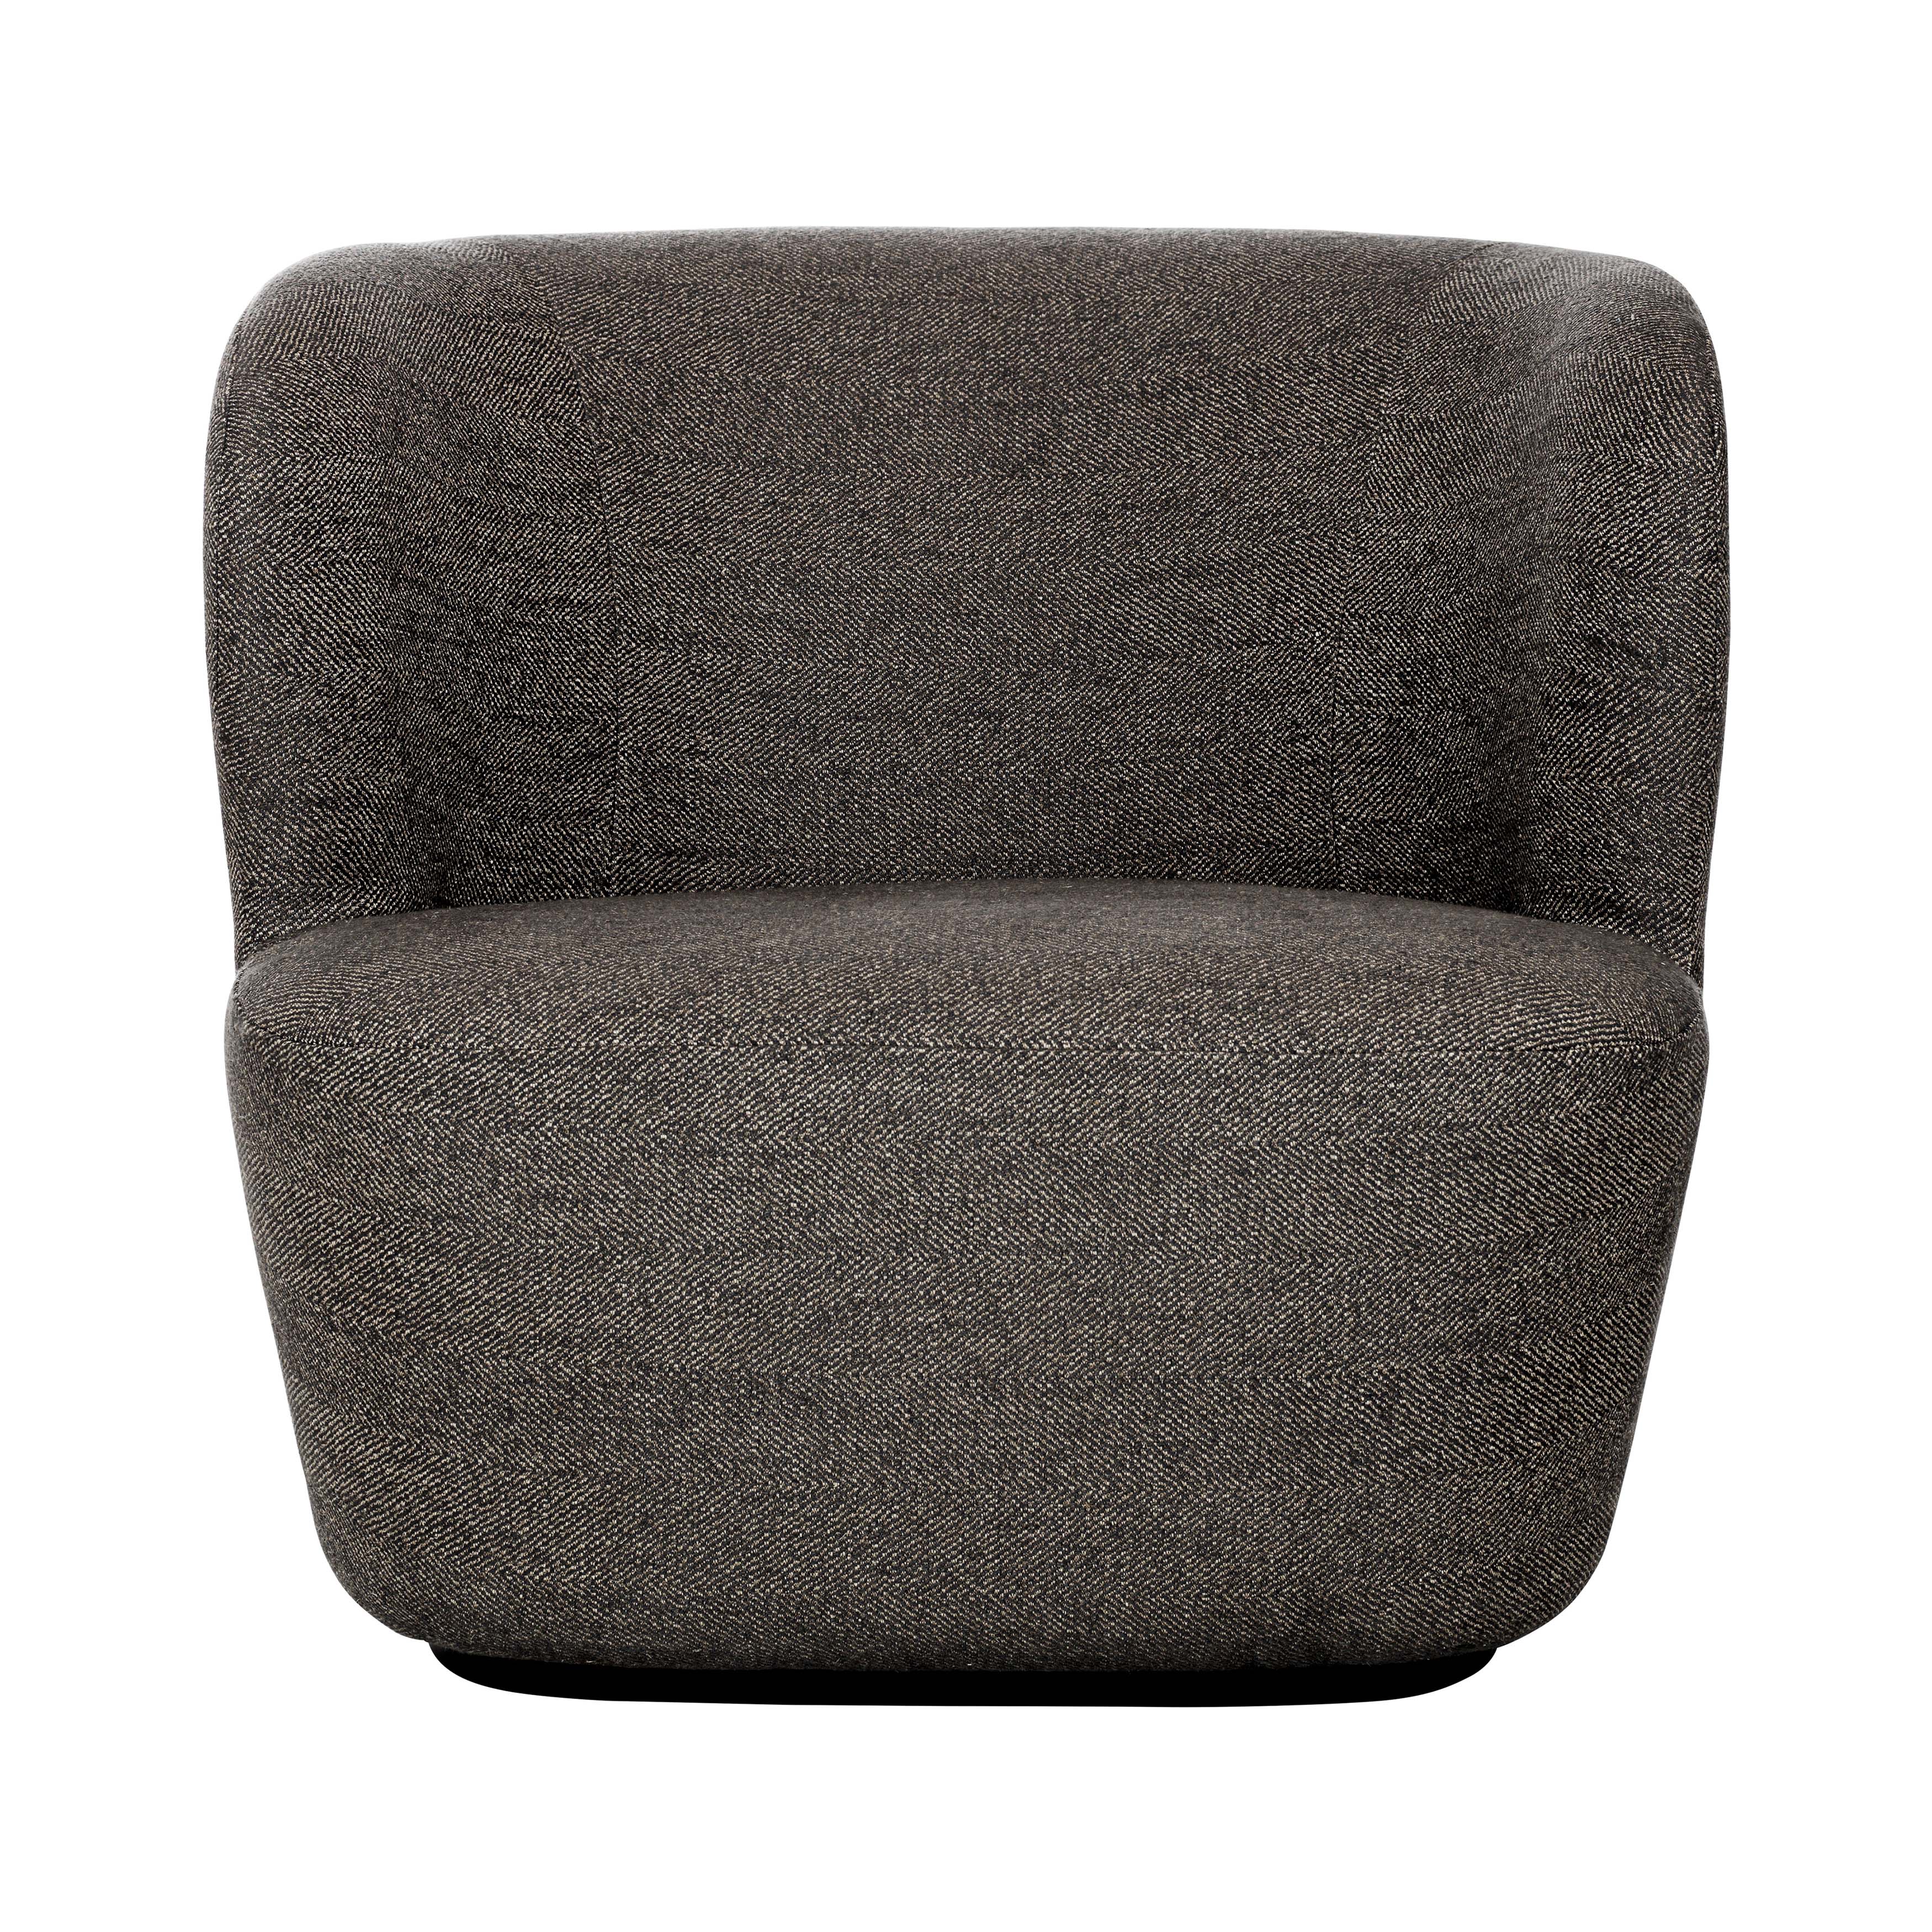 Stay Lounge Chair: Large + Black + Laibero + della + Cuccagna